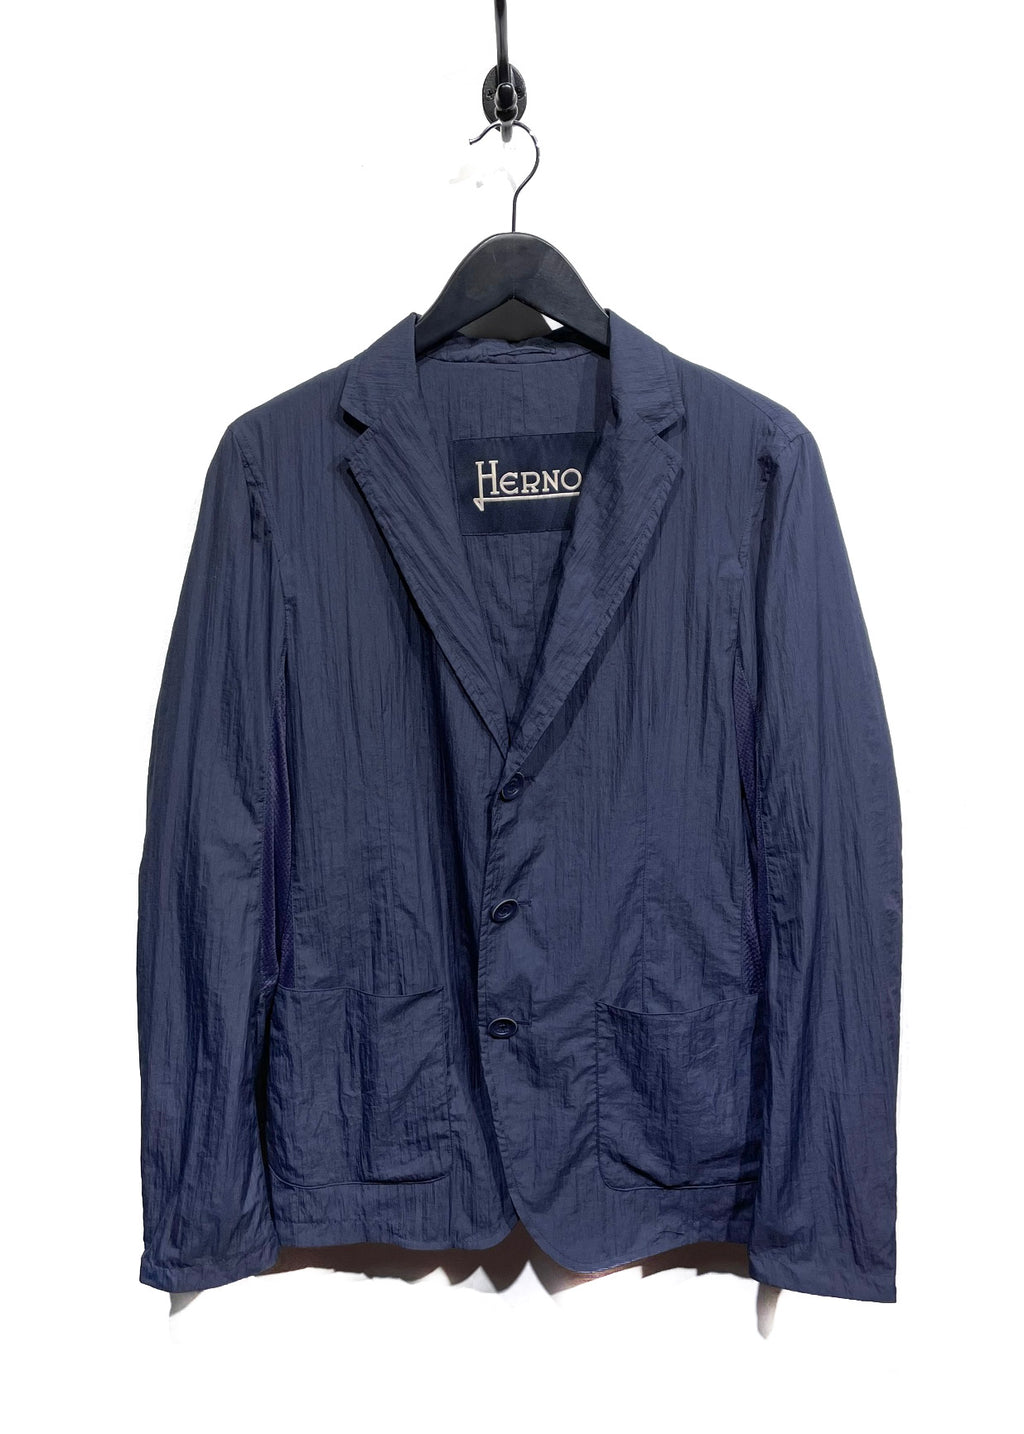 Herno Navy Utility Blazer Jacket